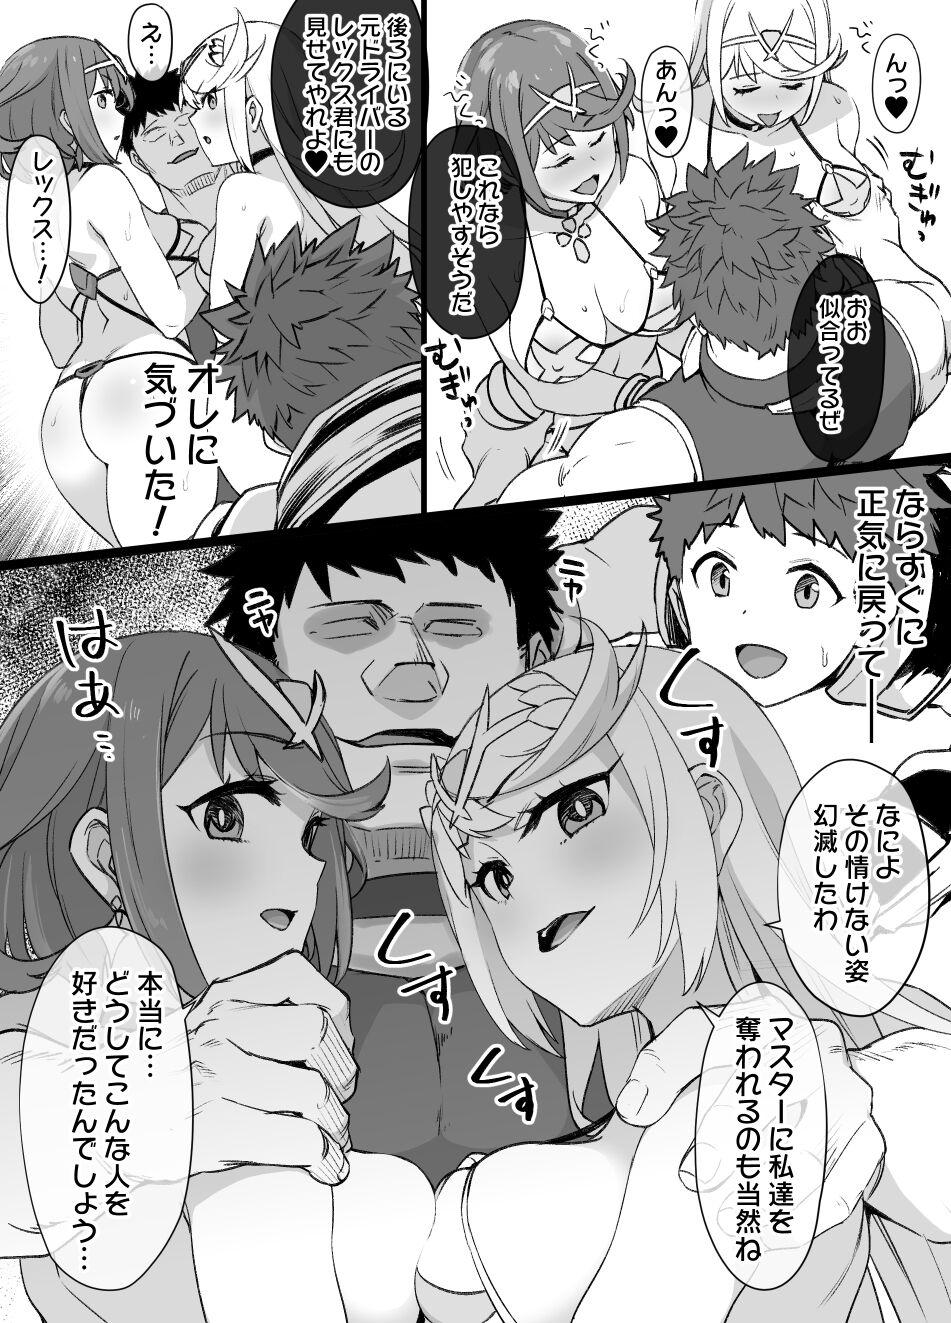 Black Homura & Hikari Sennou NTR Manga 14P - Xenoblade chronicles 2 Double Blowjob - Page 5